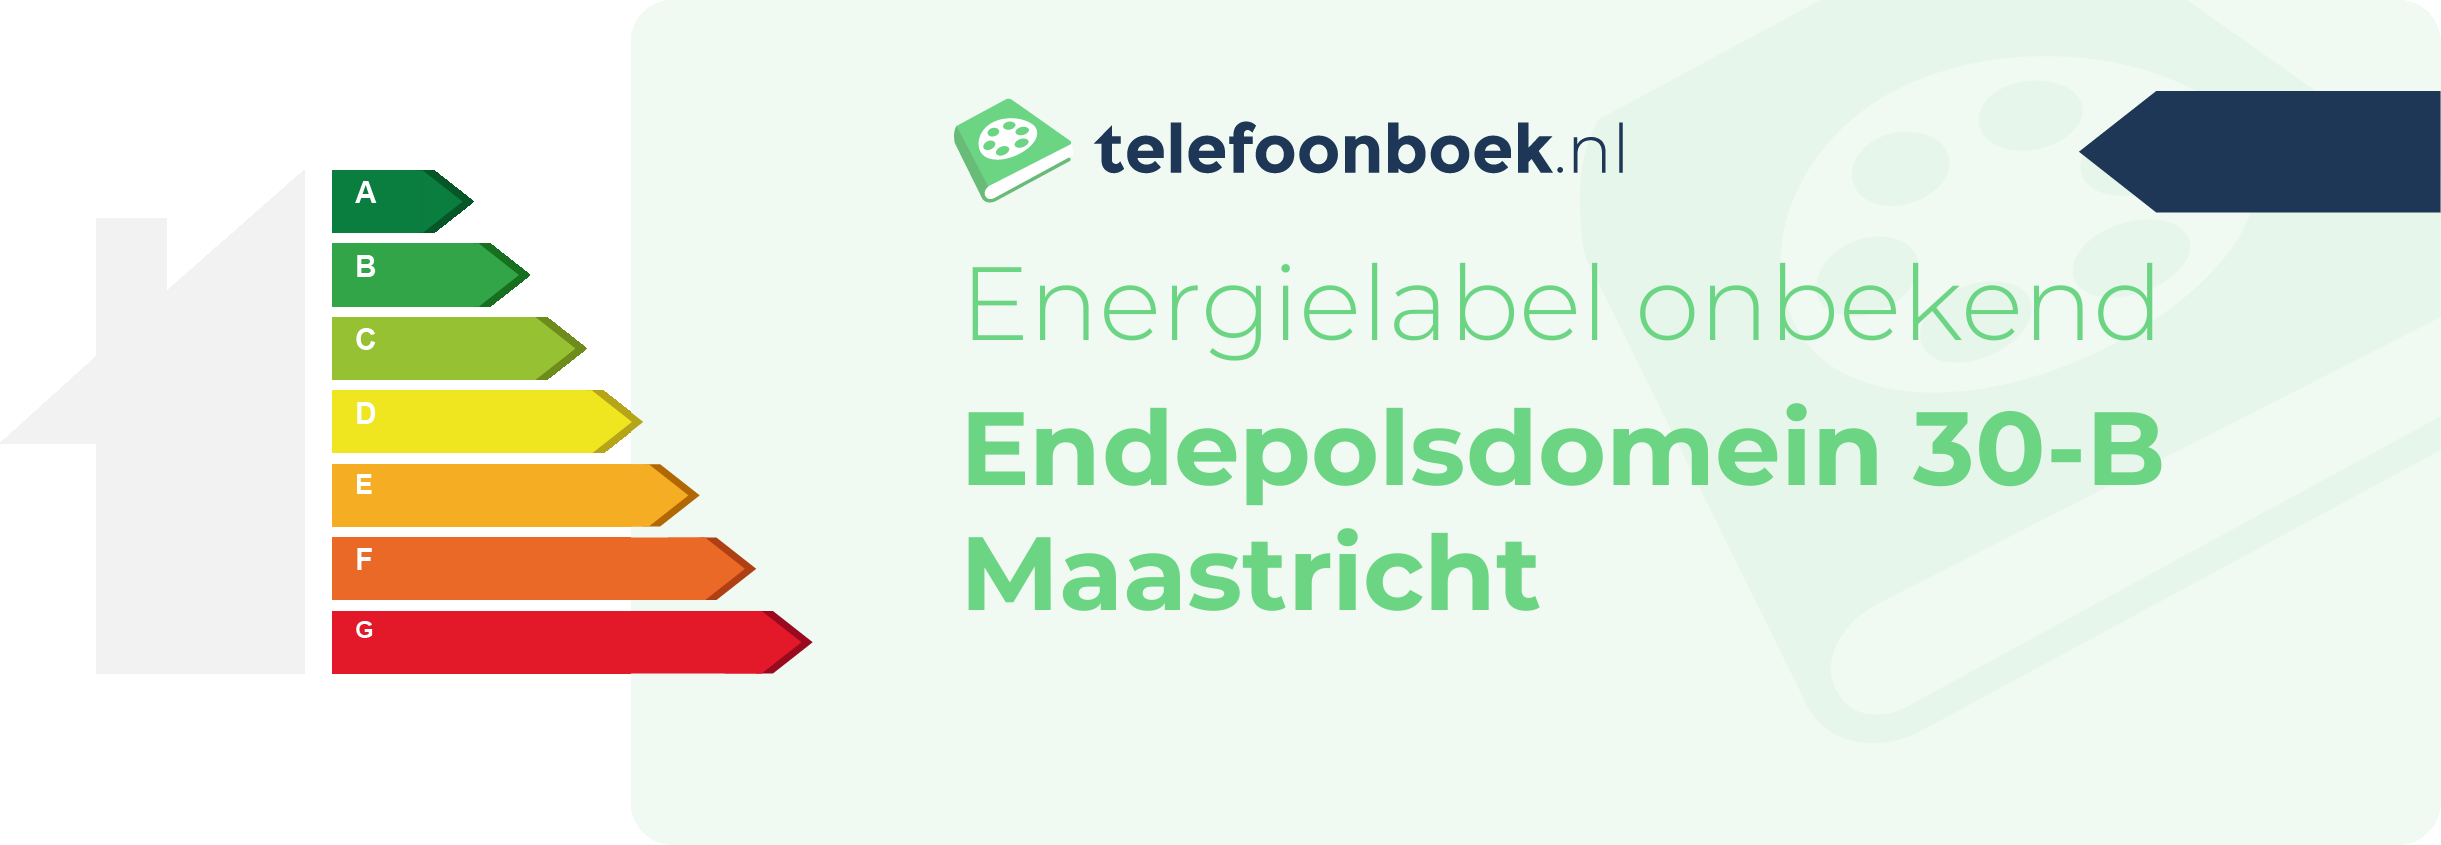 Energielabel Endepolsdomein 30-B Maastricht